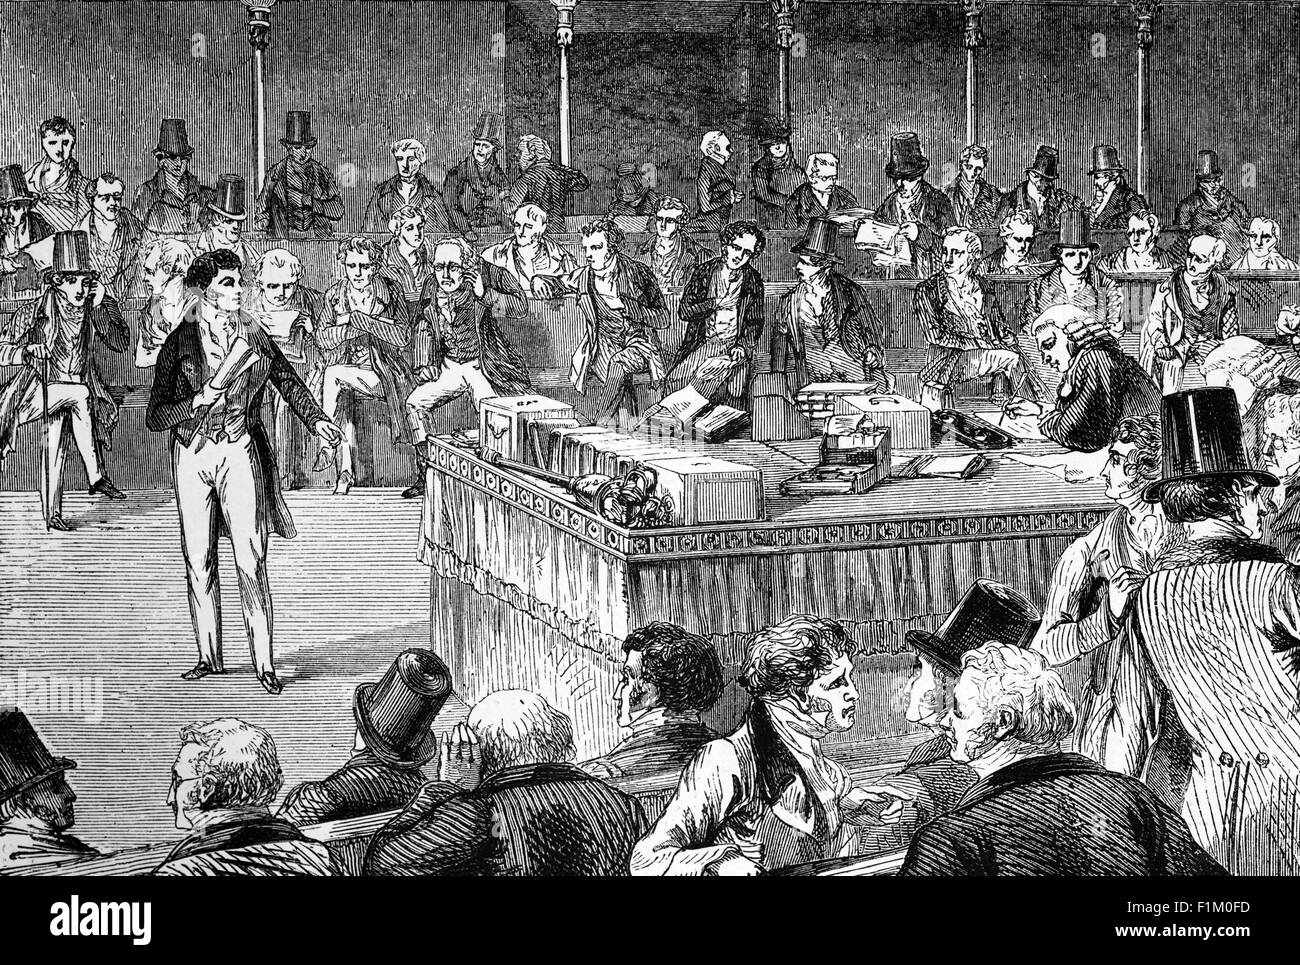 Lord John Russell, englischer Whig und liberaler Politiker, im britischen Unterhaus, Einführung des Reform Act 1832. Auch bekannt als Representation of the People Act 1832, war es ein Gesetz des Parlaments des Vereinigten Königreichs, das wesentliche Änderungen in das Wahlsystem von England und Wales einführte. Sie schaffte winzige Bezirke ab, gab den Städten die Vertretung, gab den kleinen Grundbesitzern, Pächtern, Ladenbesitzern, einigen Hausbesitzern und einigen Mietern die Stimme, aber nur qualifizierte Männer konnten wählen. Stockfoto